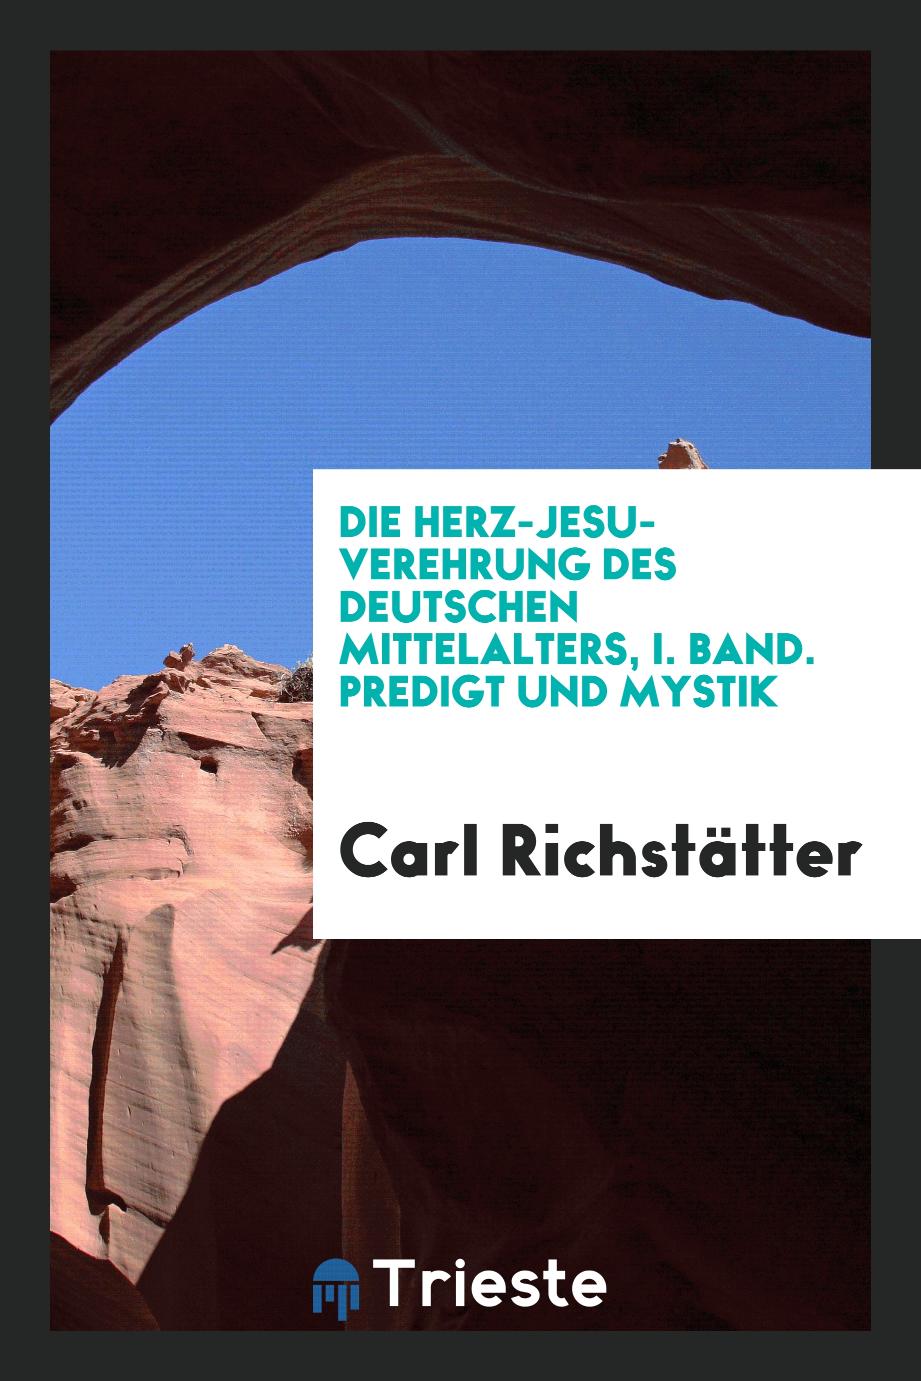 Die Herz-Jesu-Verehrung des deutschen Mittelalters, I. Band. Predigt und Mystik